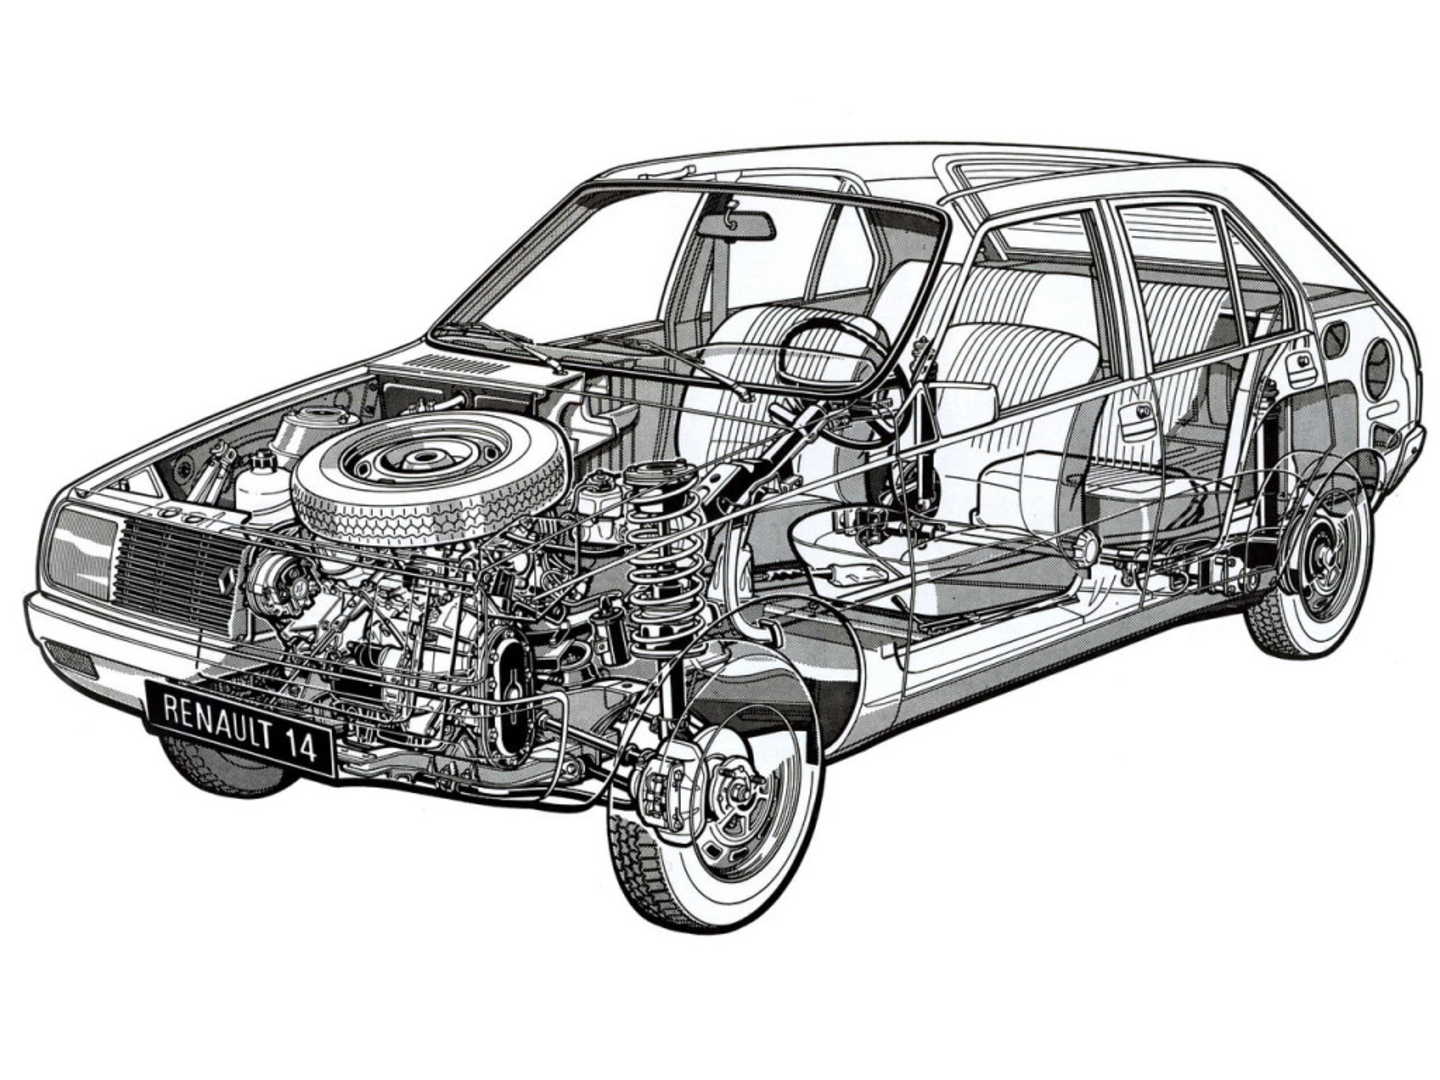 Schéma mécanique de la Renault 14